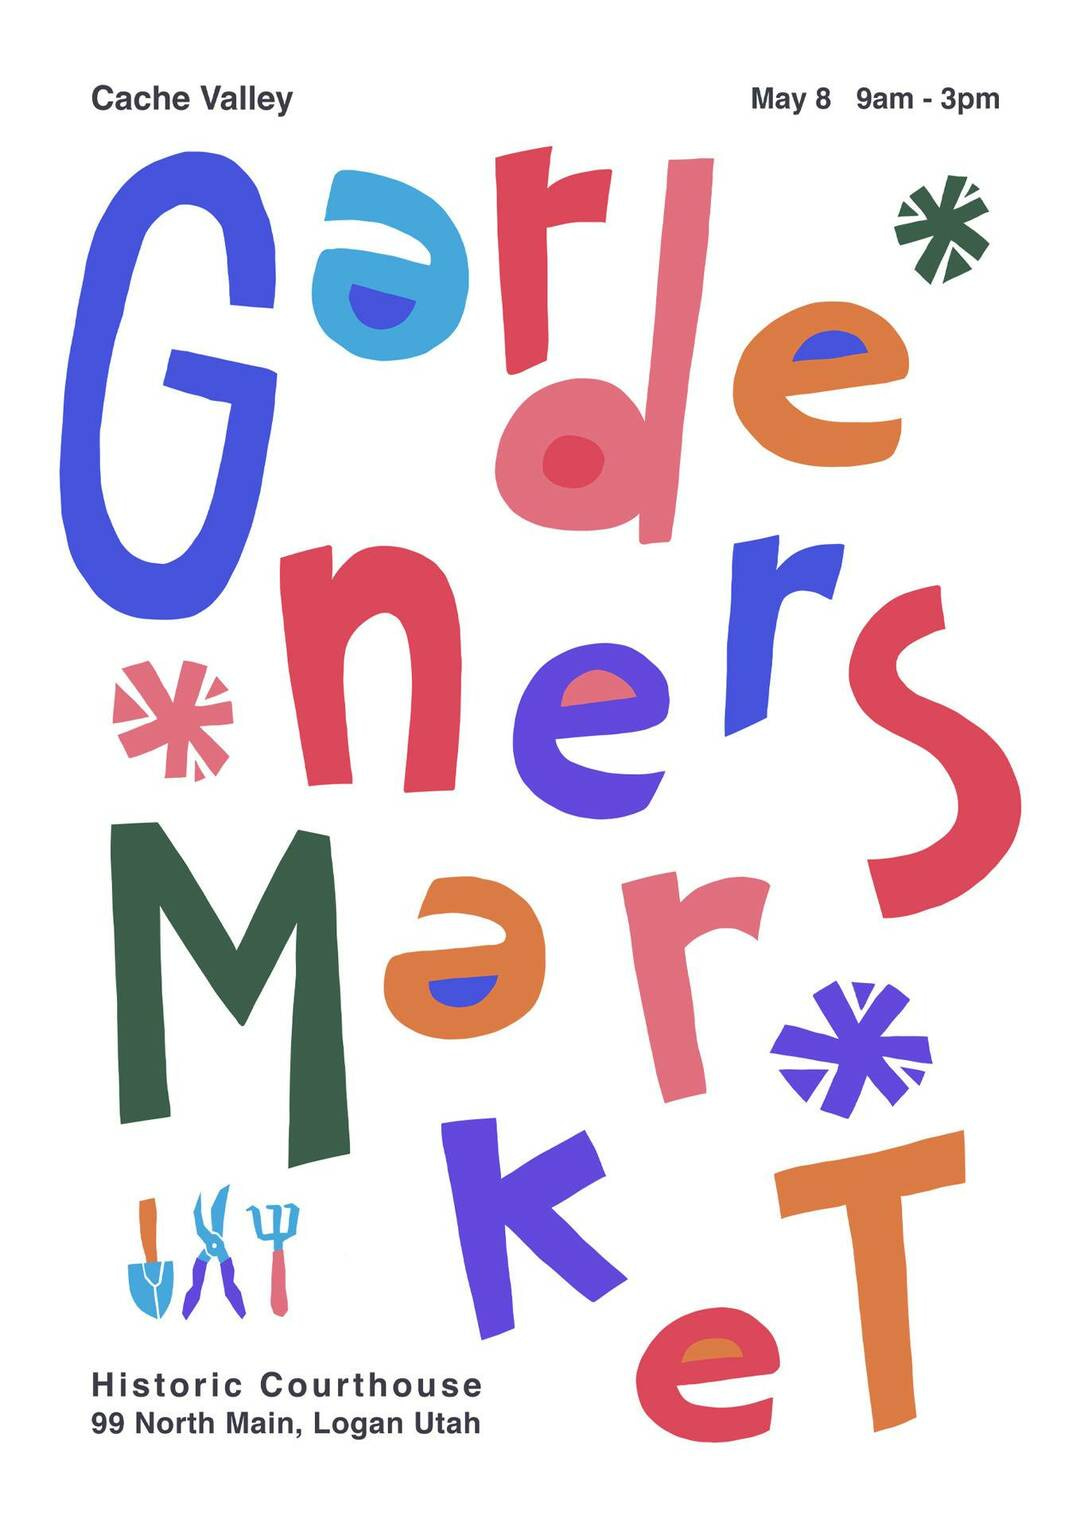 tipgm3144 gardener market